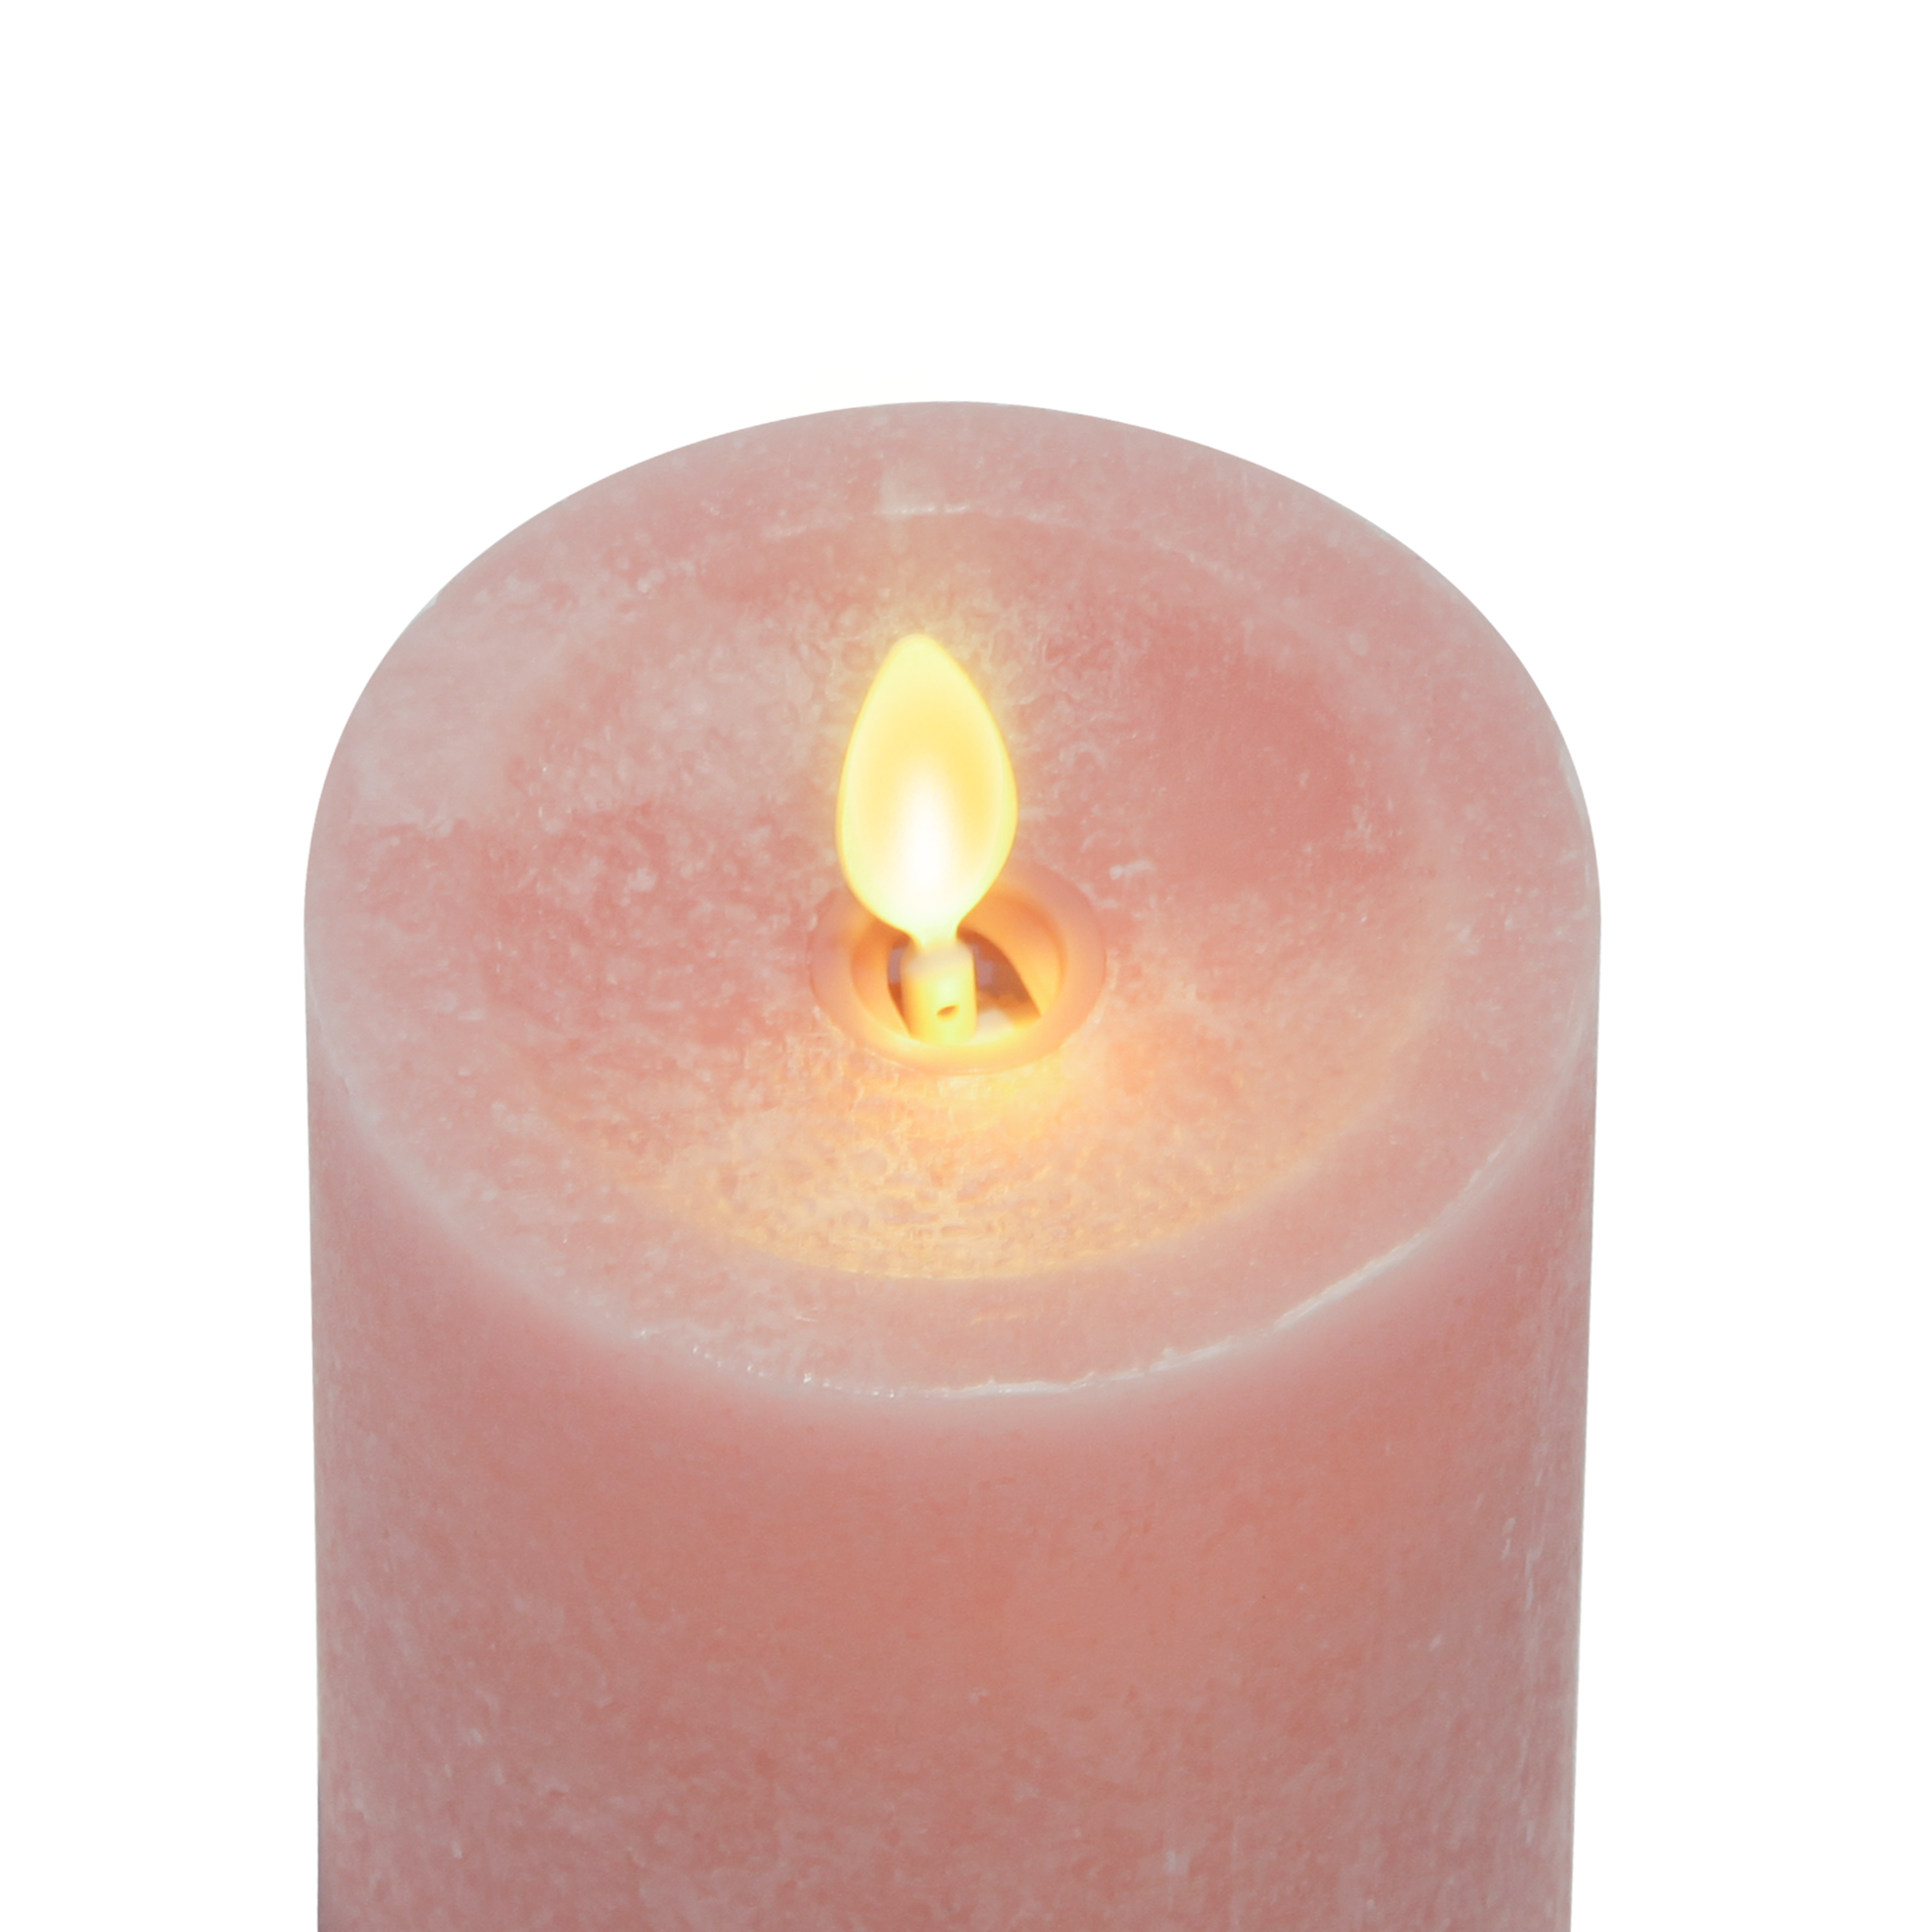 Luminara's flameless rose tan seaglass candles